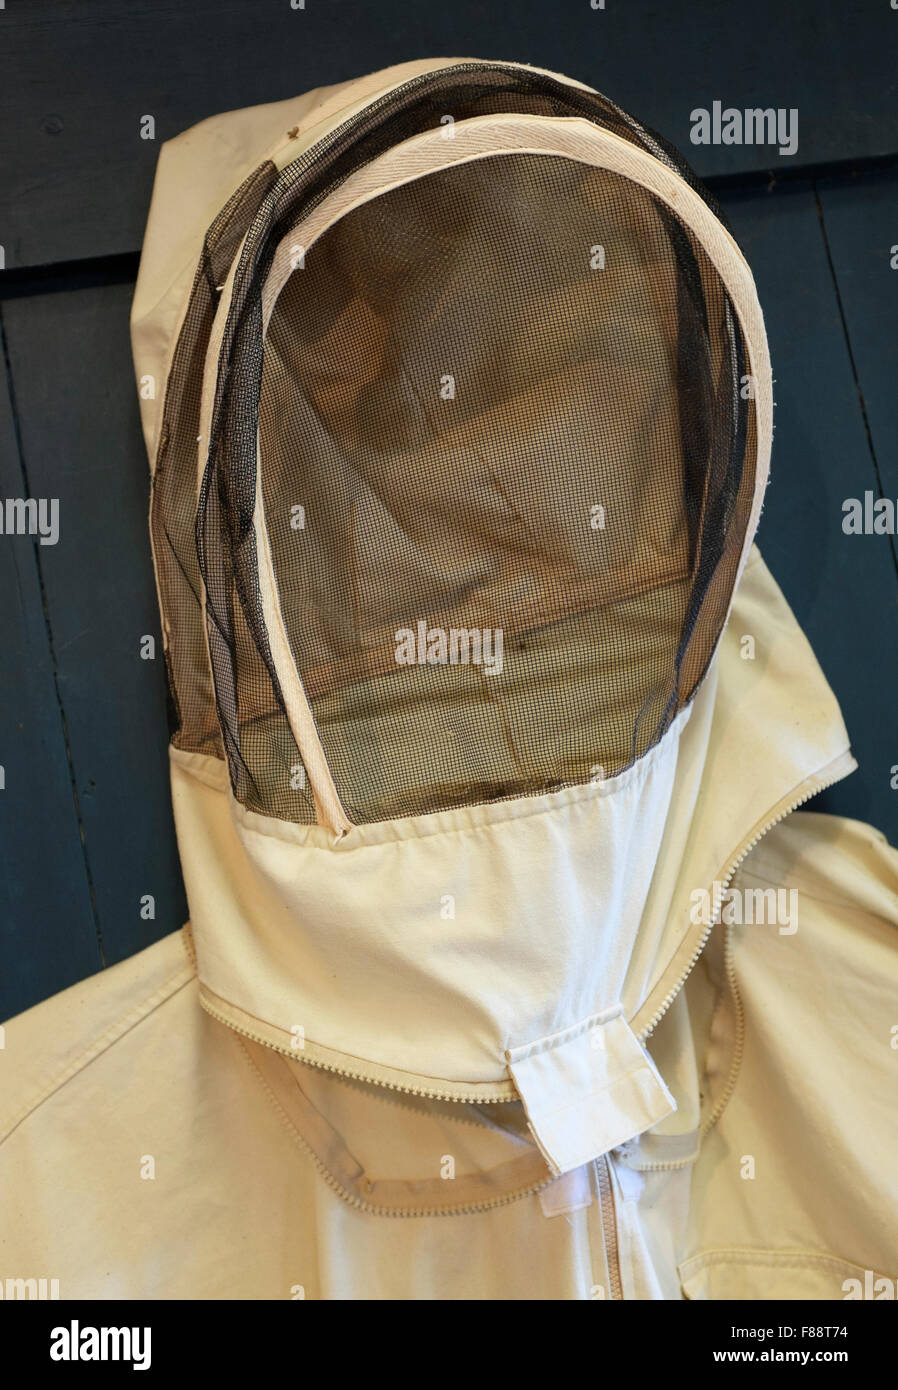 Apicultores usan un velo de esgrima se diseña para proteger sus rostros de las picaduras de abeja Foto de stock